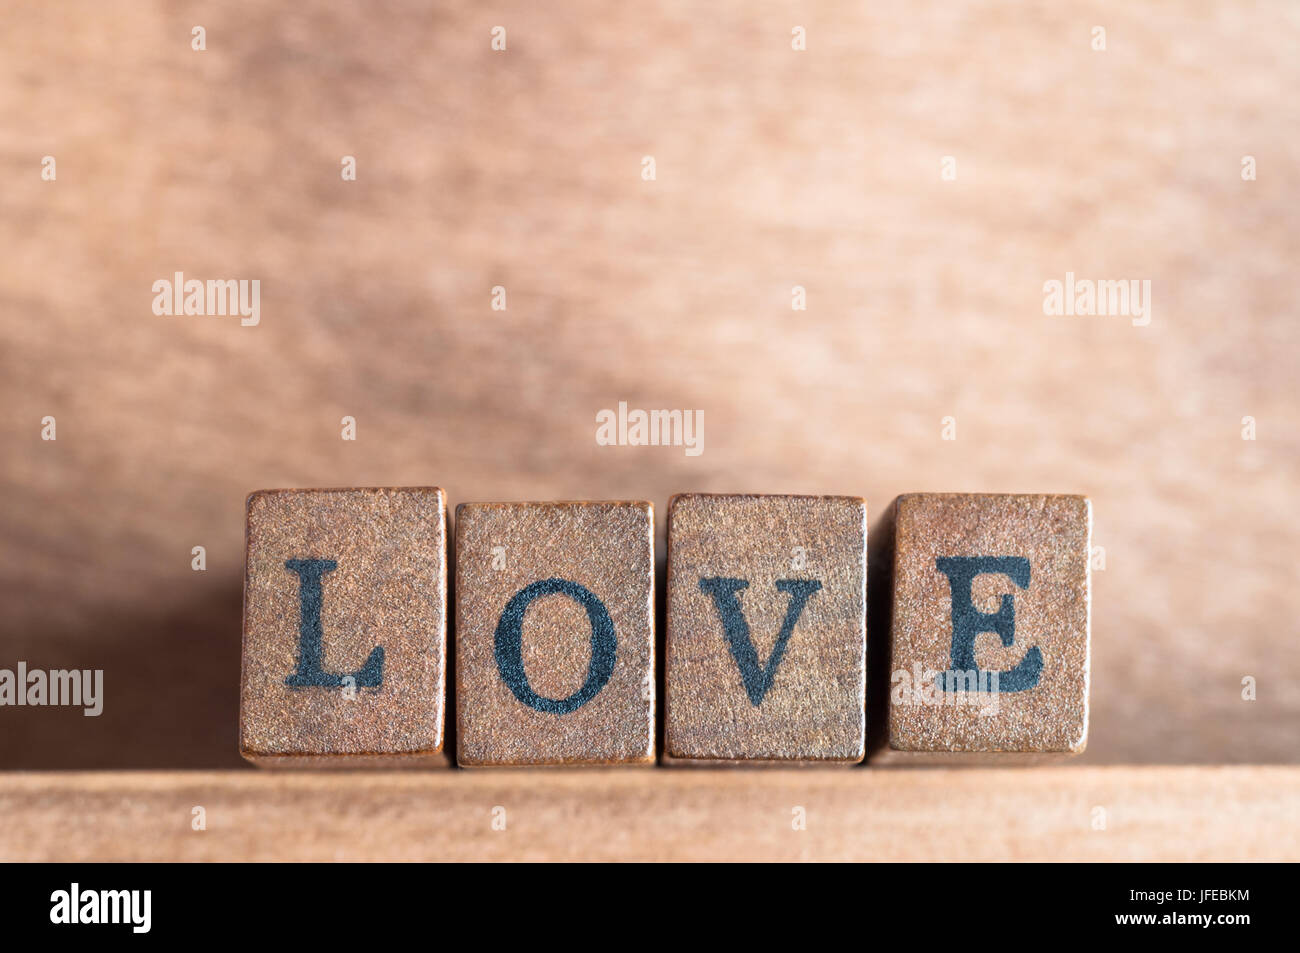 La palabra "amor" enunciadas en una fila de bloques de madera con letras vintage retro o apariencia, mirando hacia delante en un estante de madera con fondo de madera Foto de stock